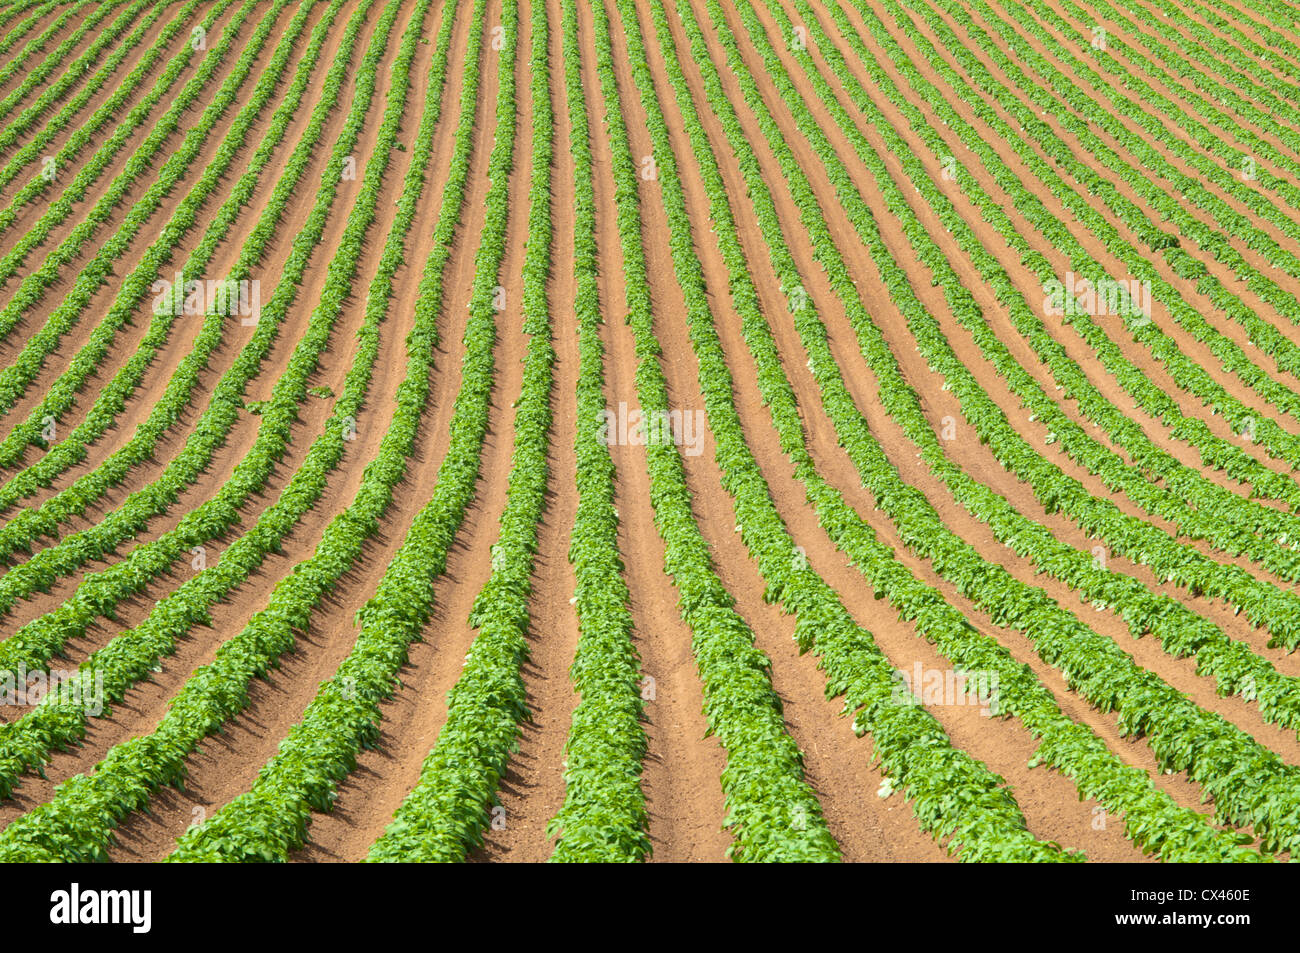 Les pommes de terre dans la zone striée. Sussex, UK. Mai. Banque D'Images